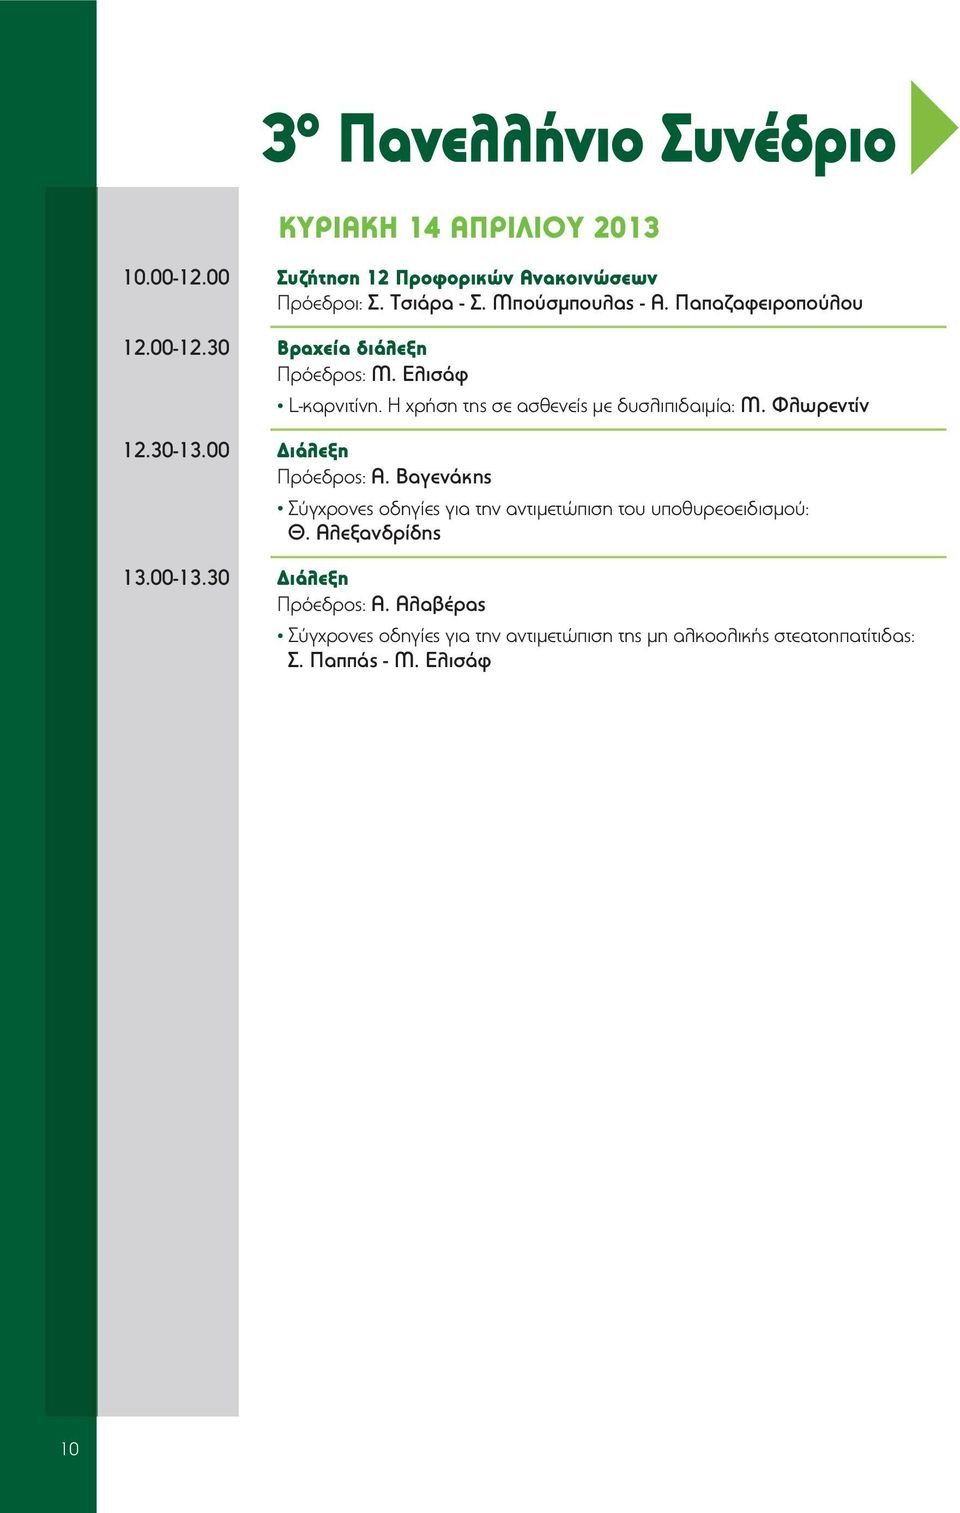 Φλωρεντίν 12.30-13.00 Διάλεξη Πρόεδρος: Α. Βαγενάκης Σύγχρονες οδηγίες για την αντιμετώπιση του υποθυρεοειδισμού: Θ.